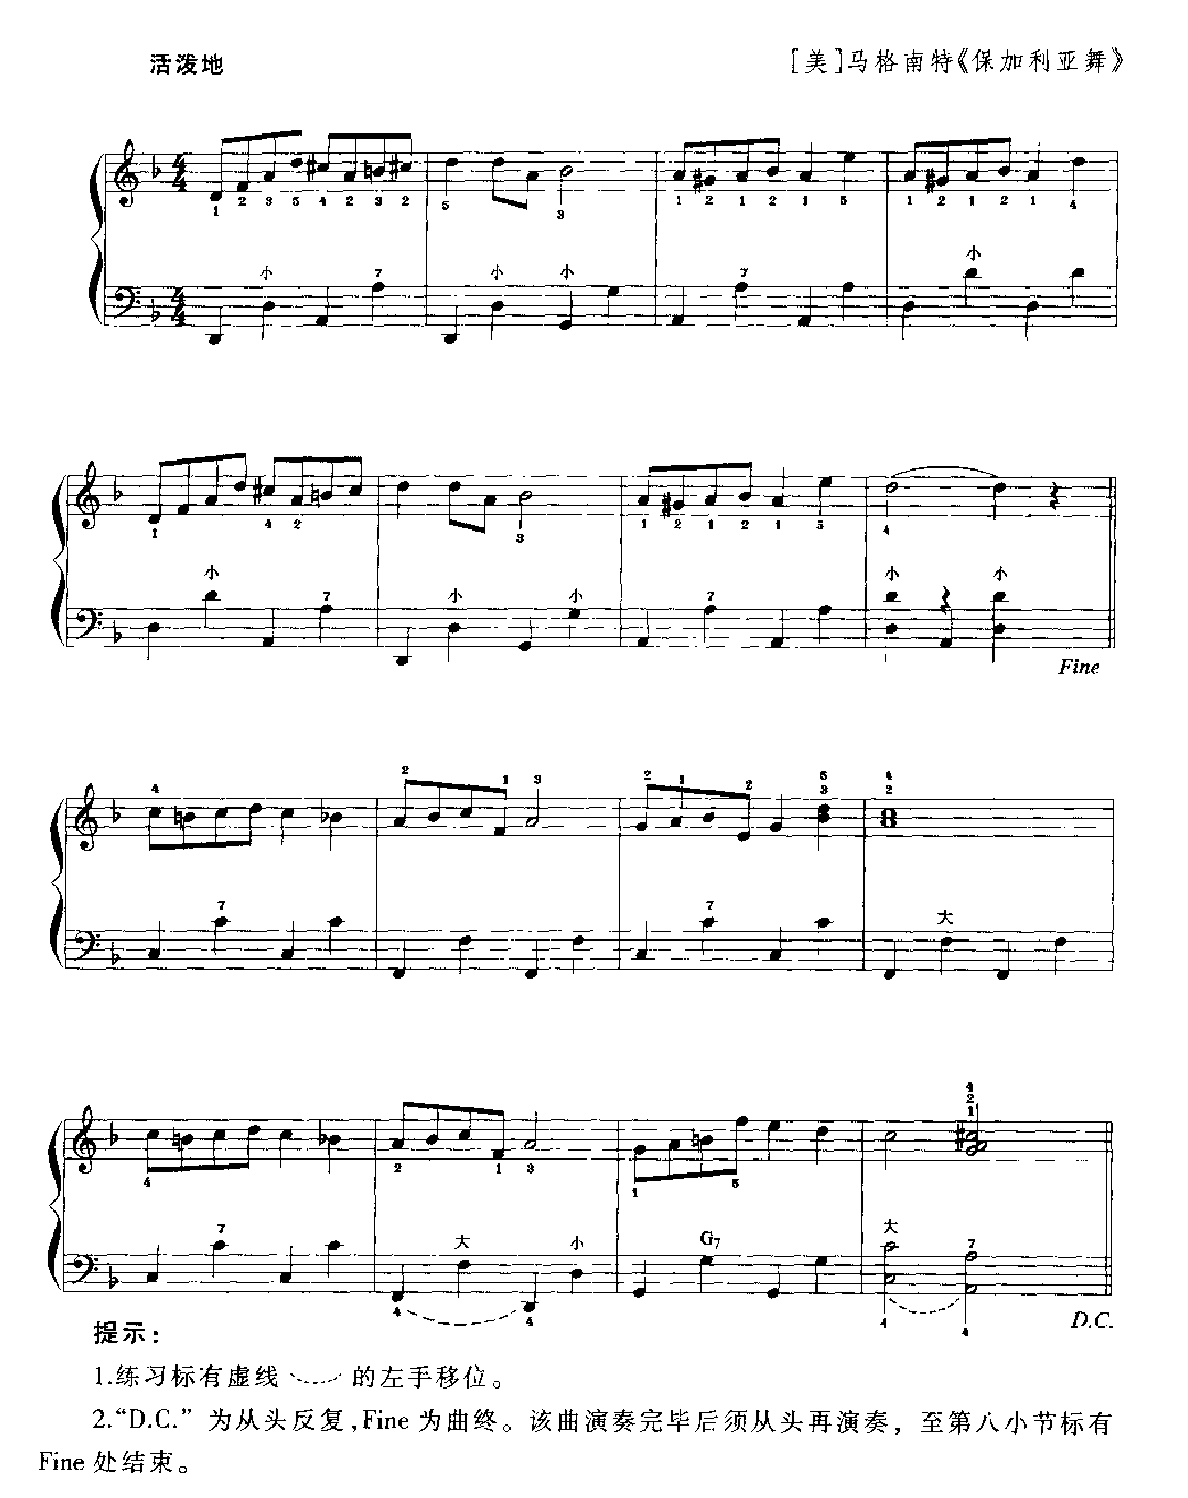 手风琴d旋律小调音阶及琶音练习3